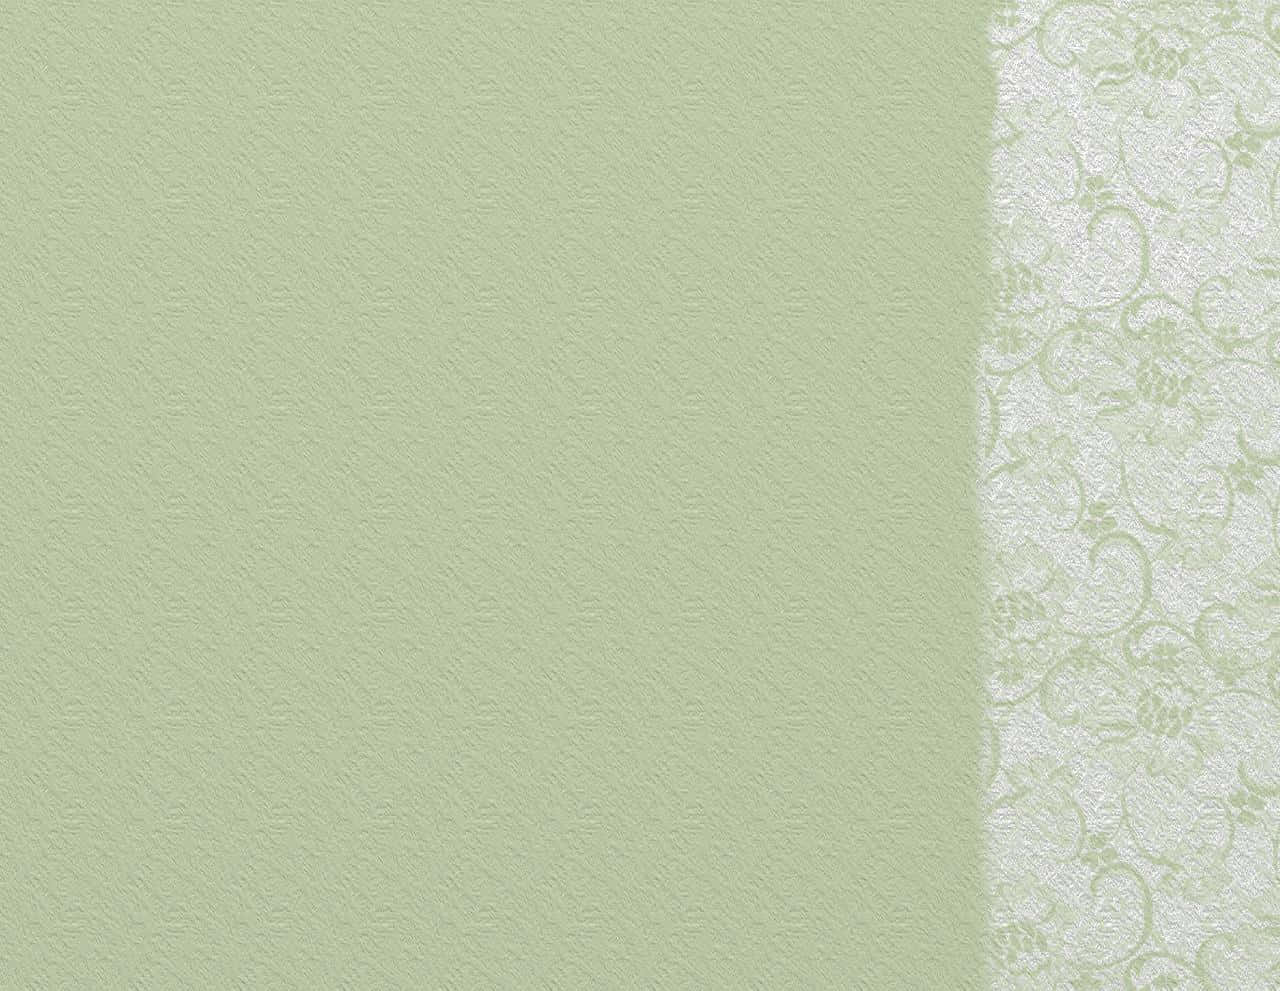 Låtdin Kreativitet Flöda Fritt Med En Snygg Salviagrön Laptop Wallpapers. Wallpaper